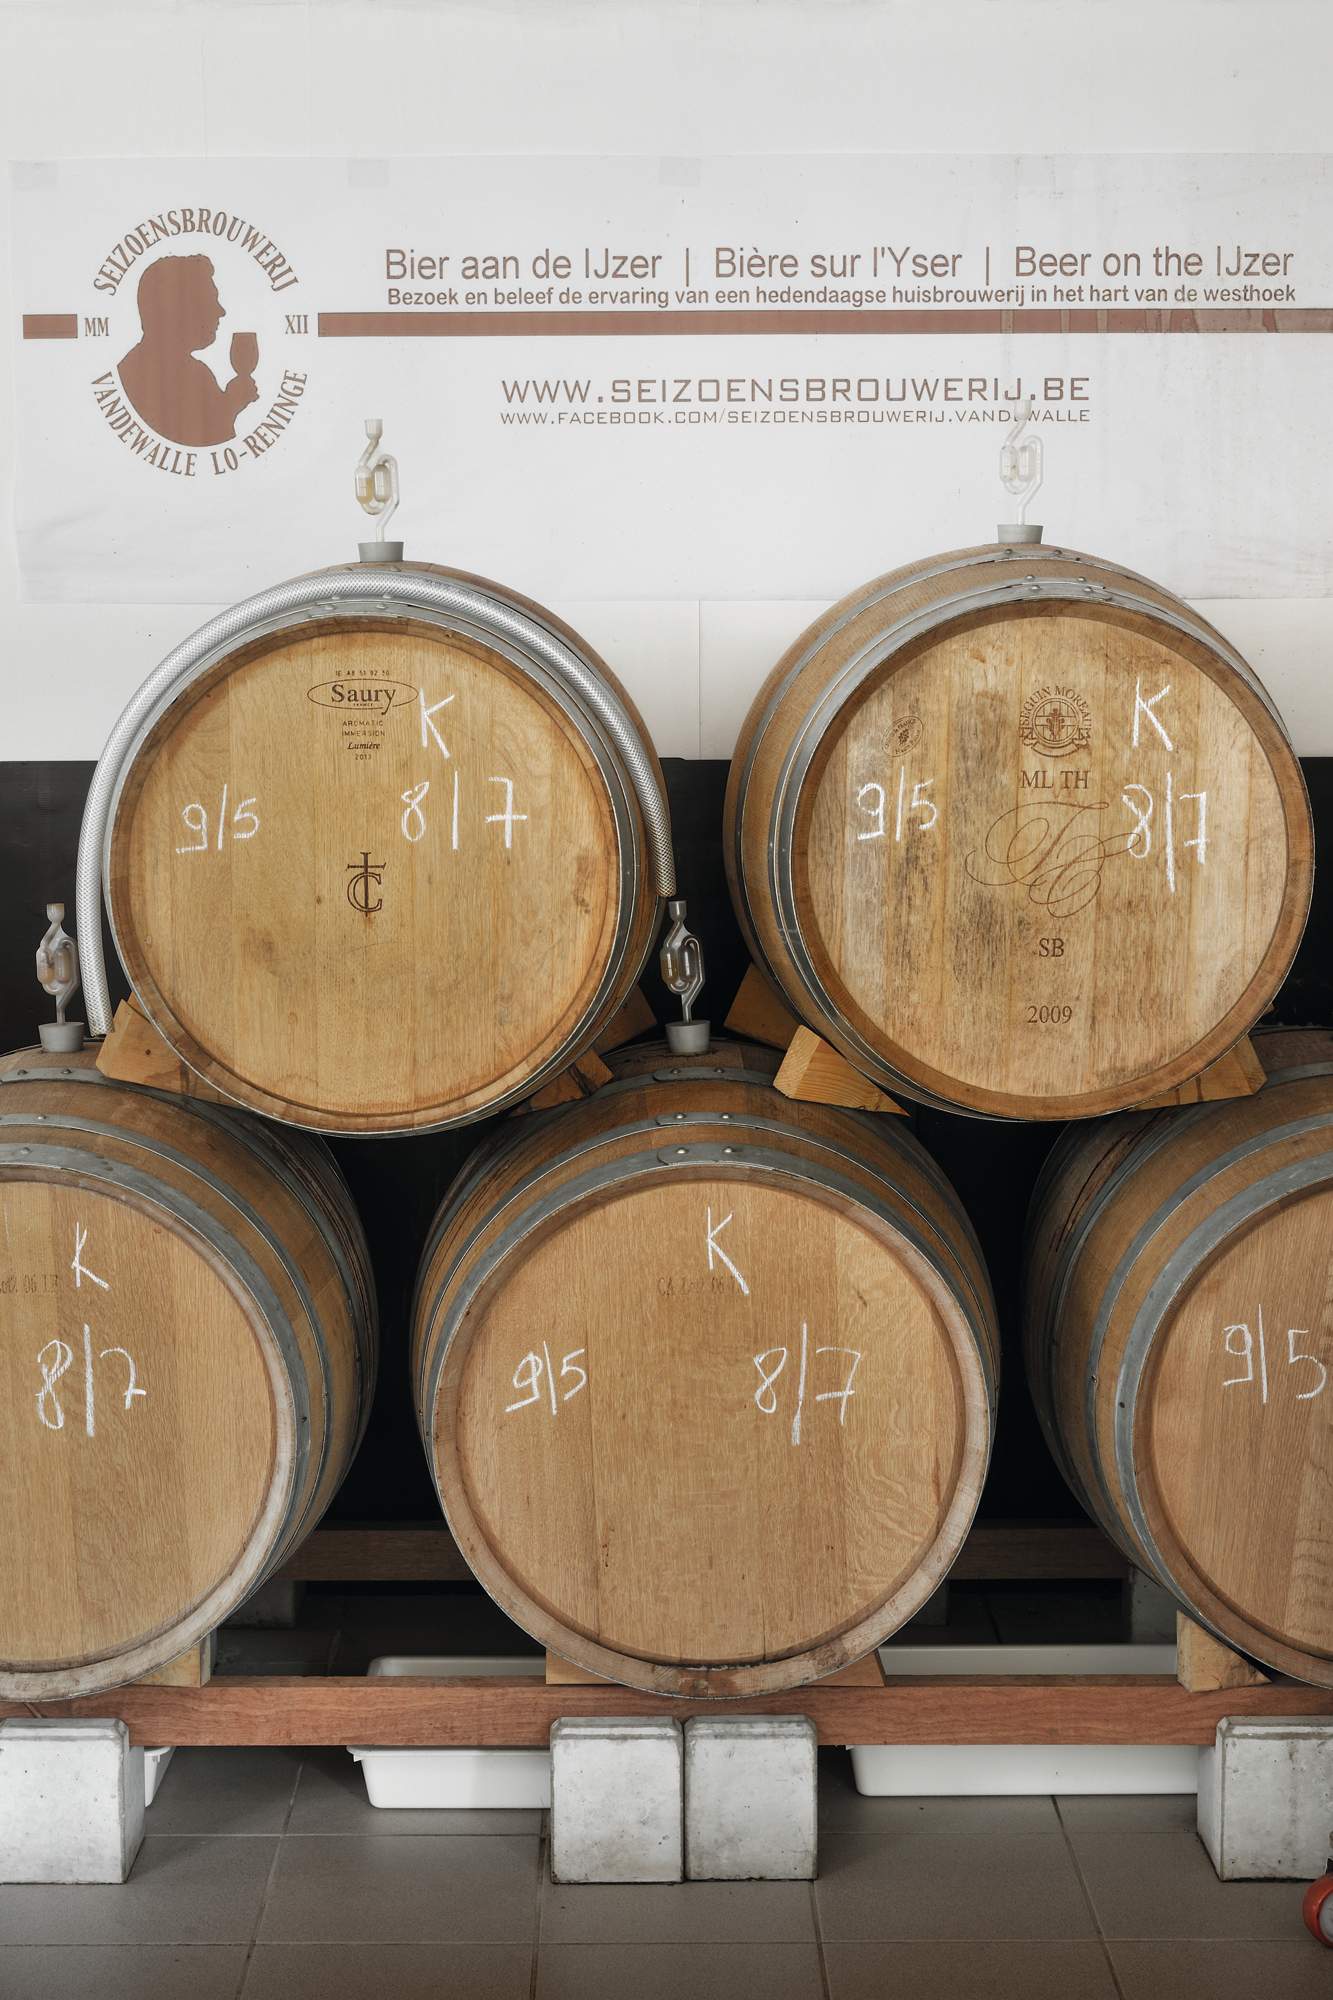 50-seizoensbrouwerij-vdw-cherry-beer-oak-barrels-_esx0452.jpg